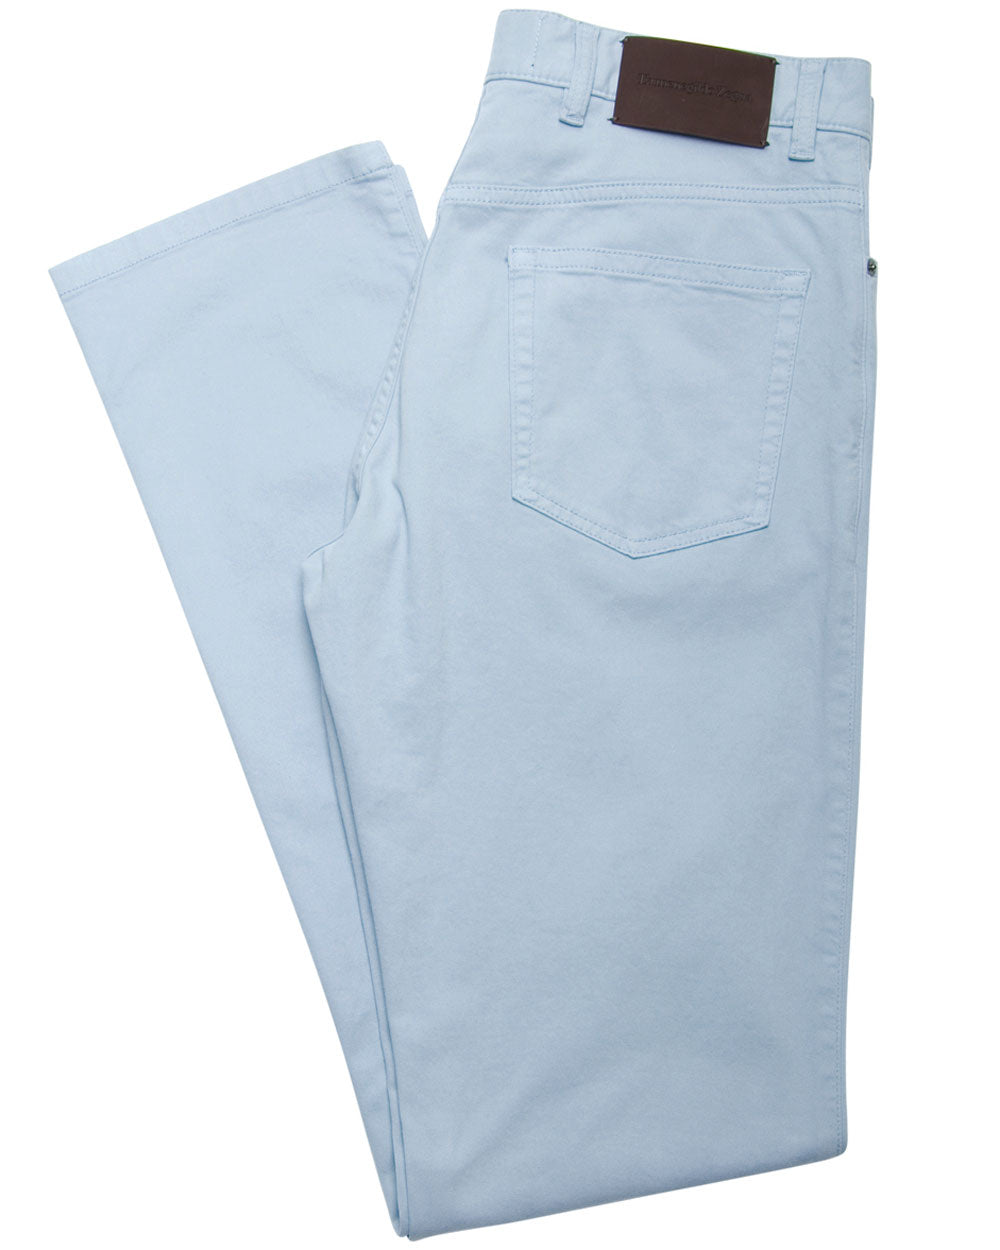 Ermenegildo Zegna Light Blue Stretch Cotton 5 Pocket Pant